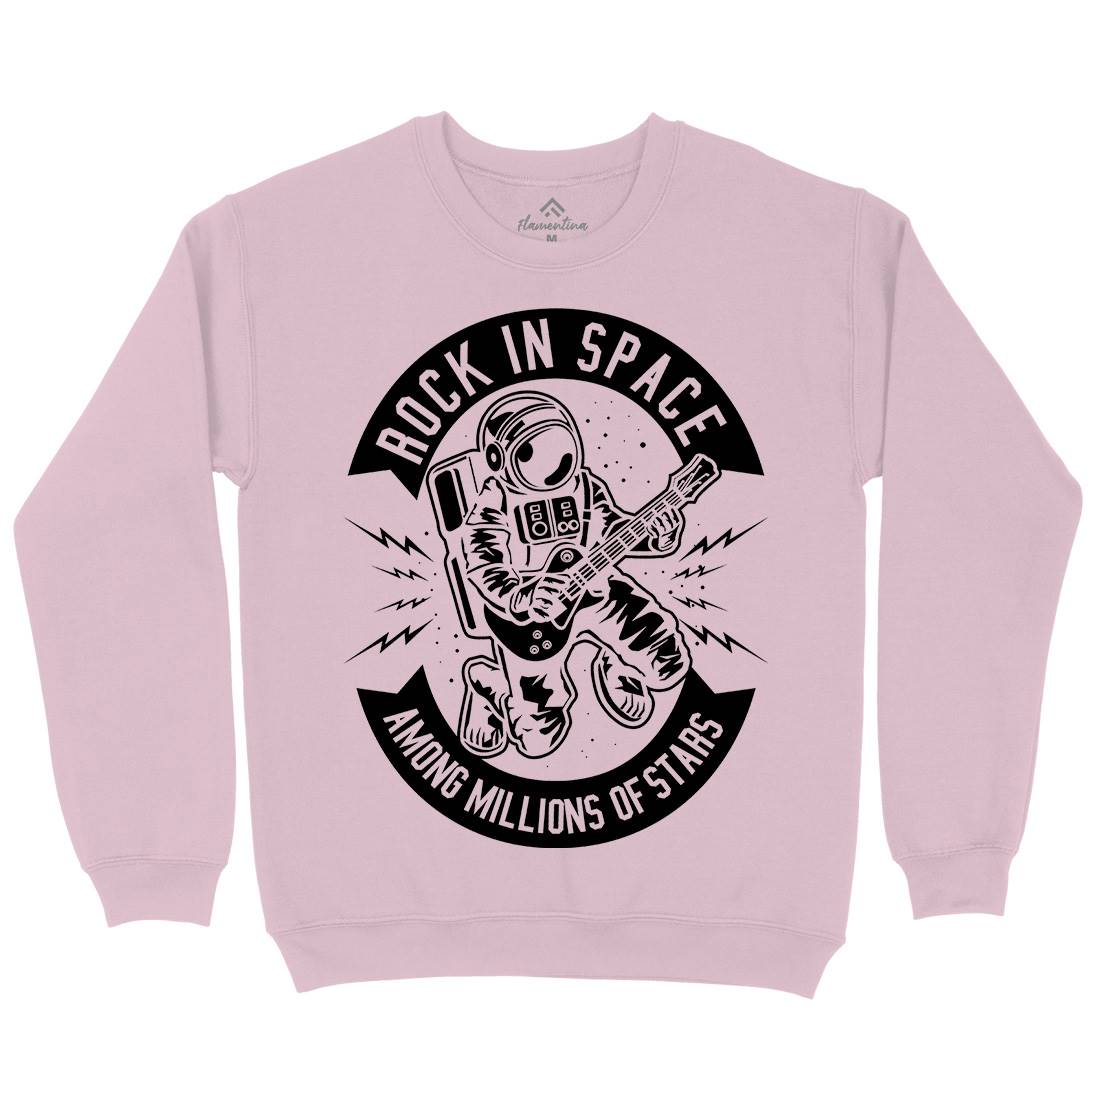 Rock In Space Kids Crew Neck Sweatshirt Music B612